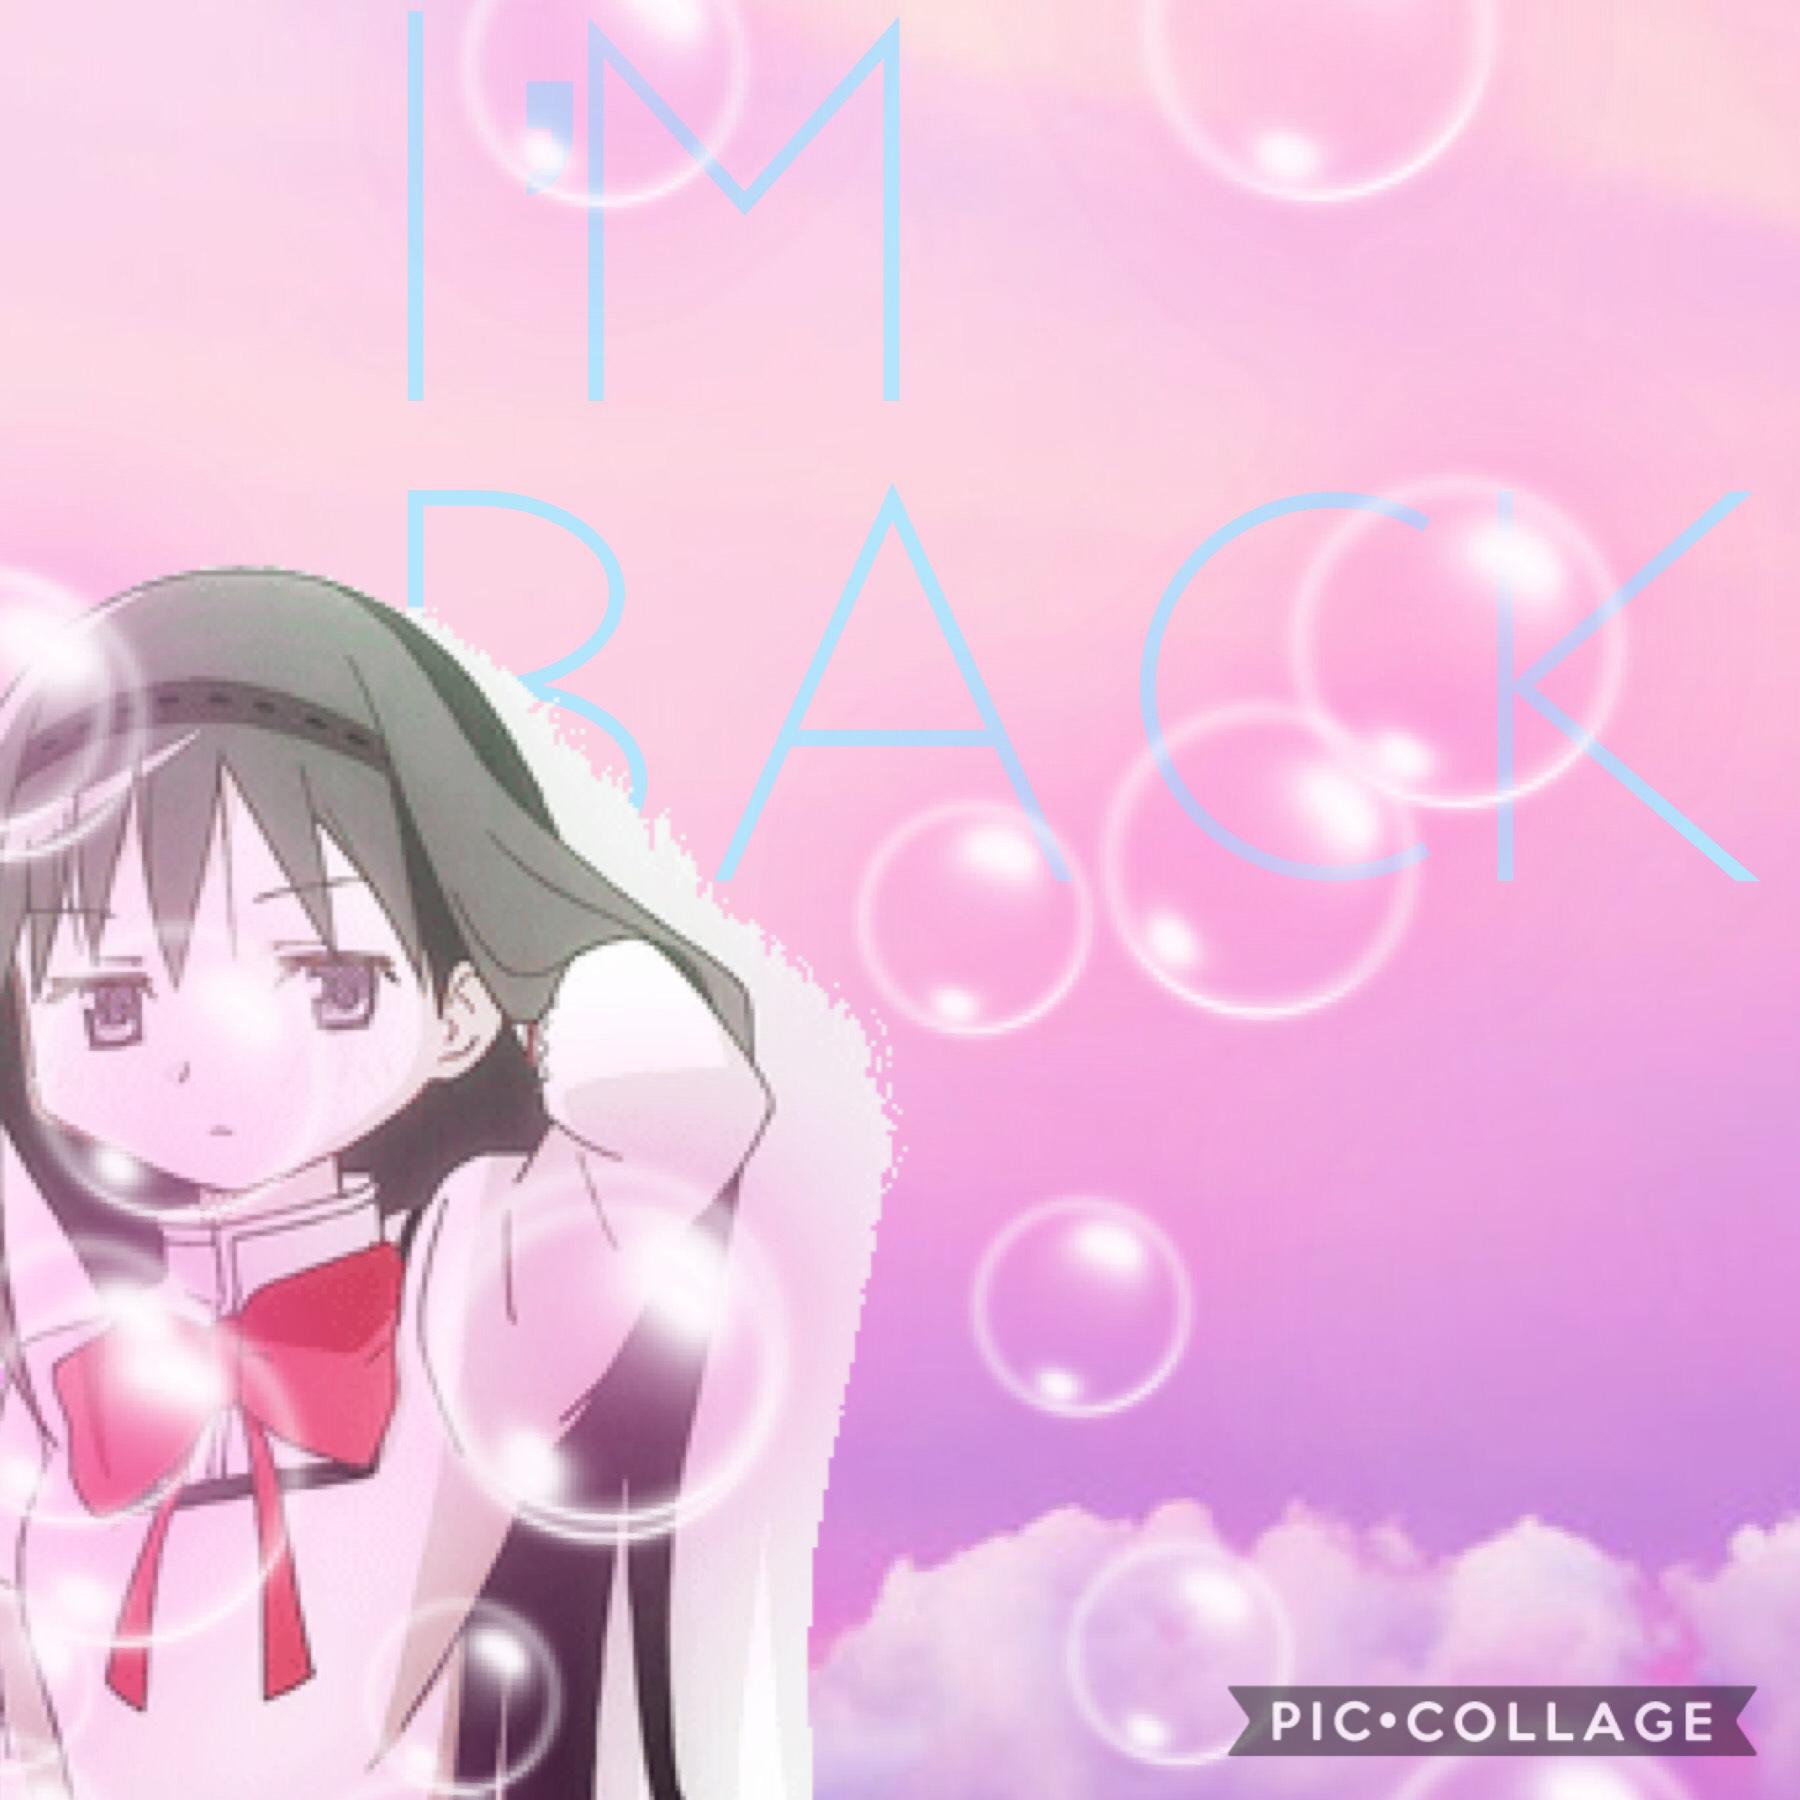 I’m back guys!